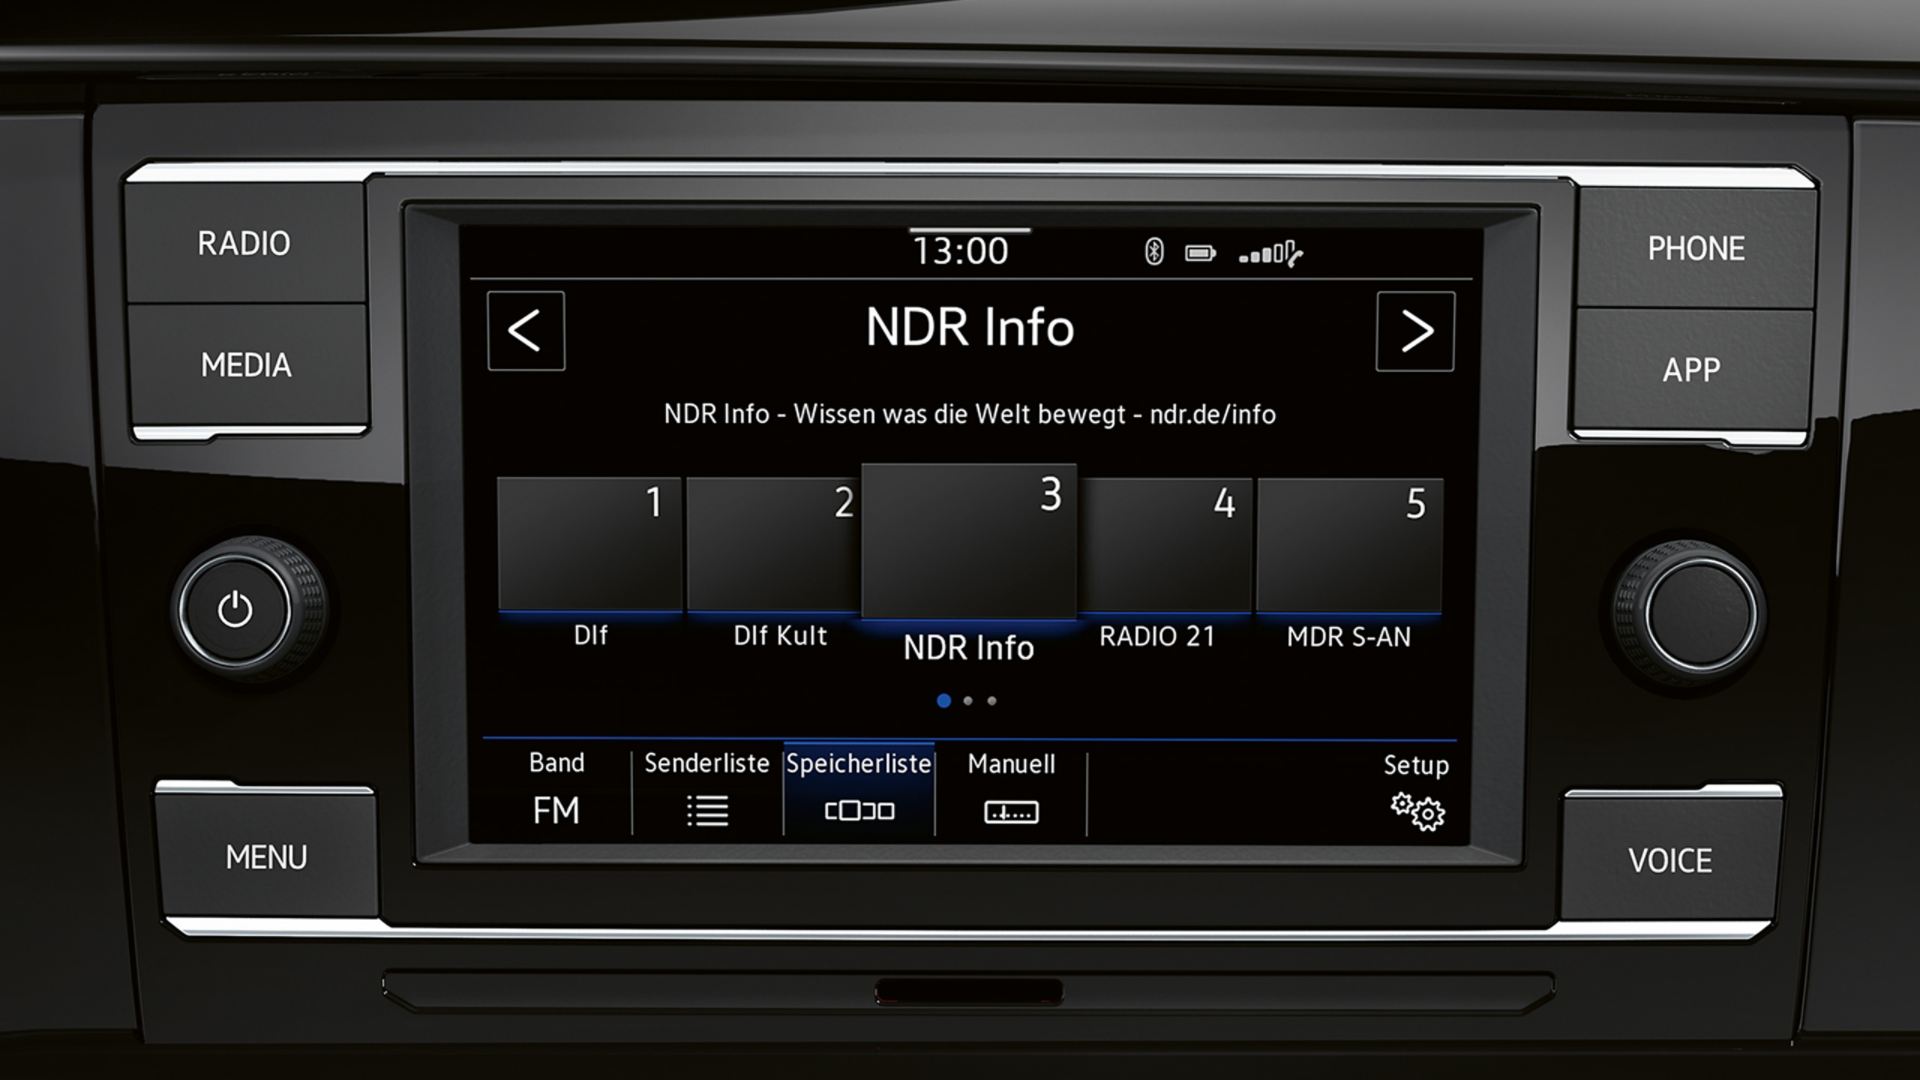 Vista frontal do sistema de rádio da Volkswagen "Composition Colour" da VW Caravelle 6.1